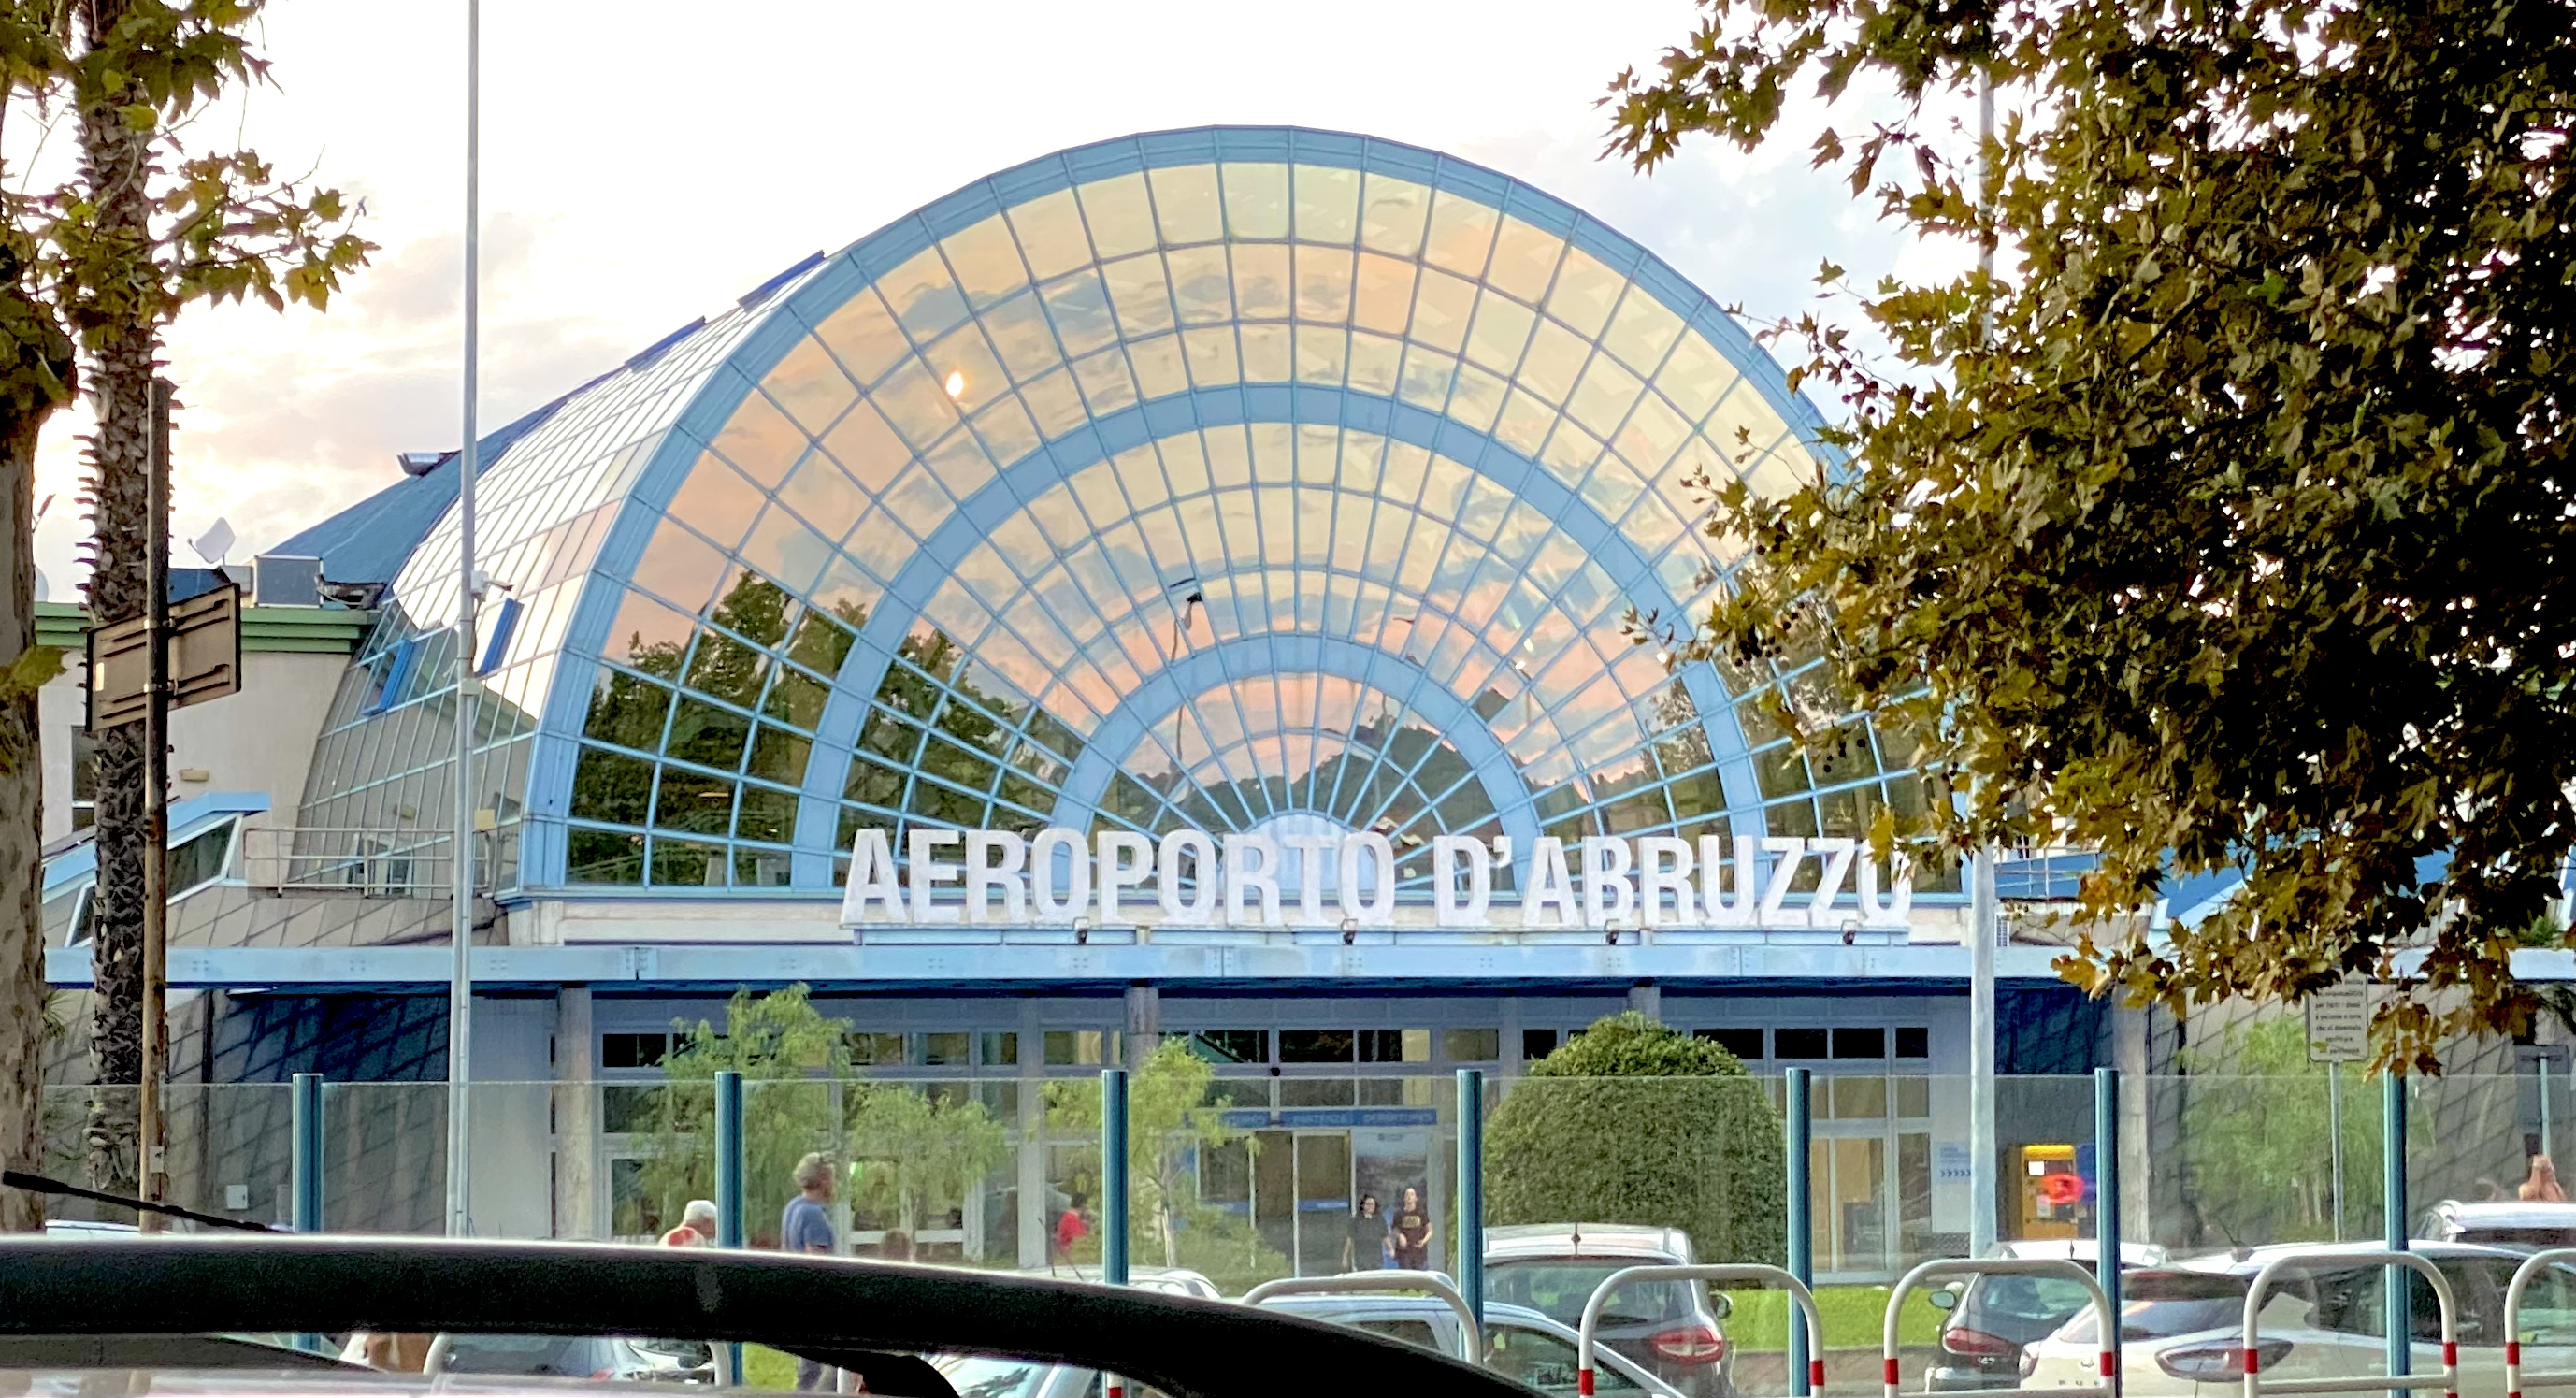 Aeroporto D’Abruzzo. La SAGA rassicura sulla “Direzione” e sul volo con Milano Linate prospettive da verificare